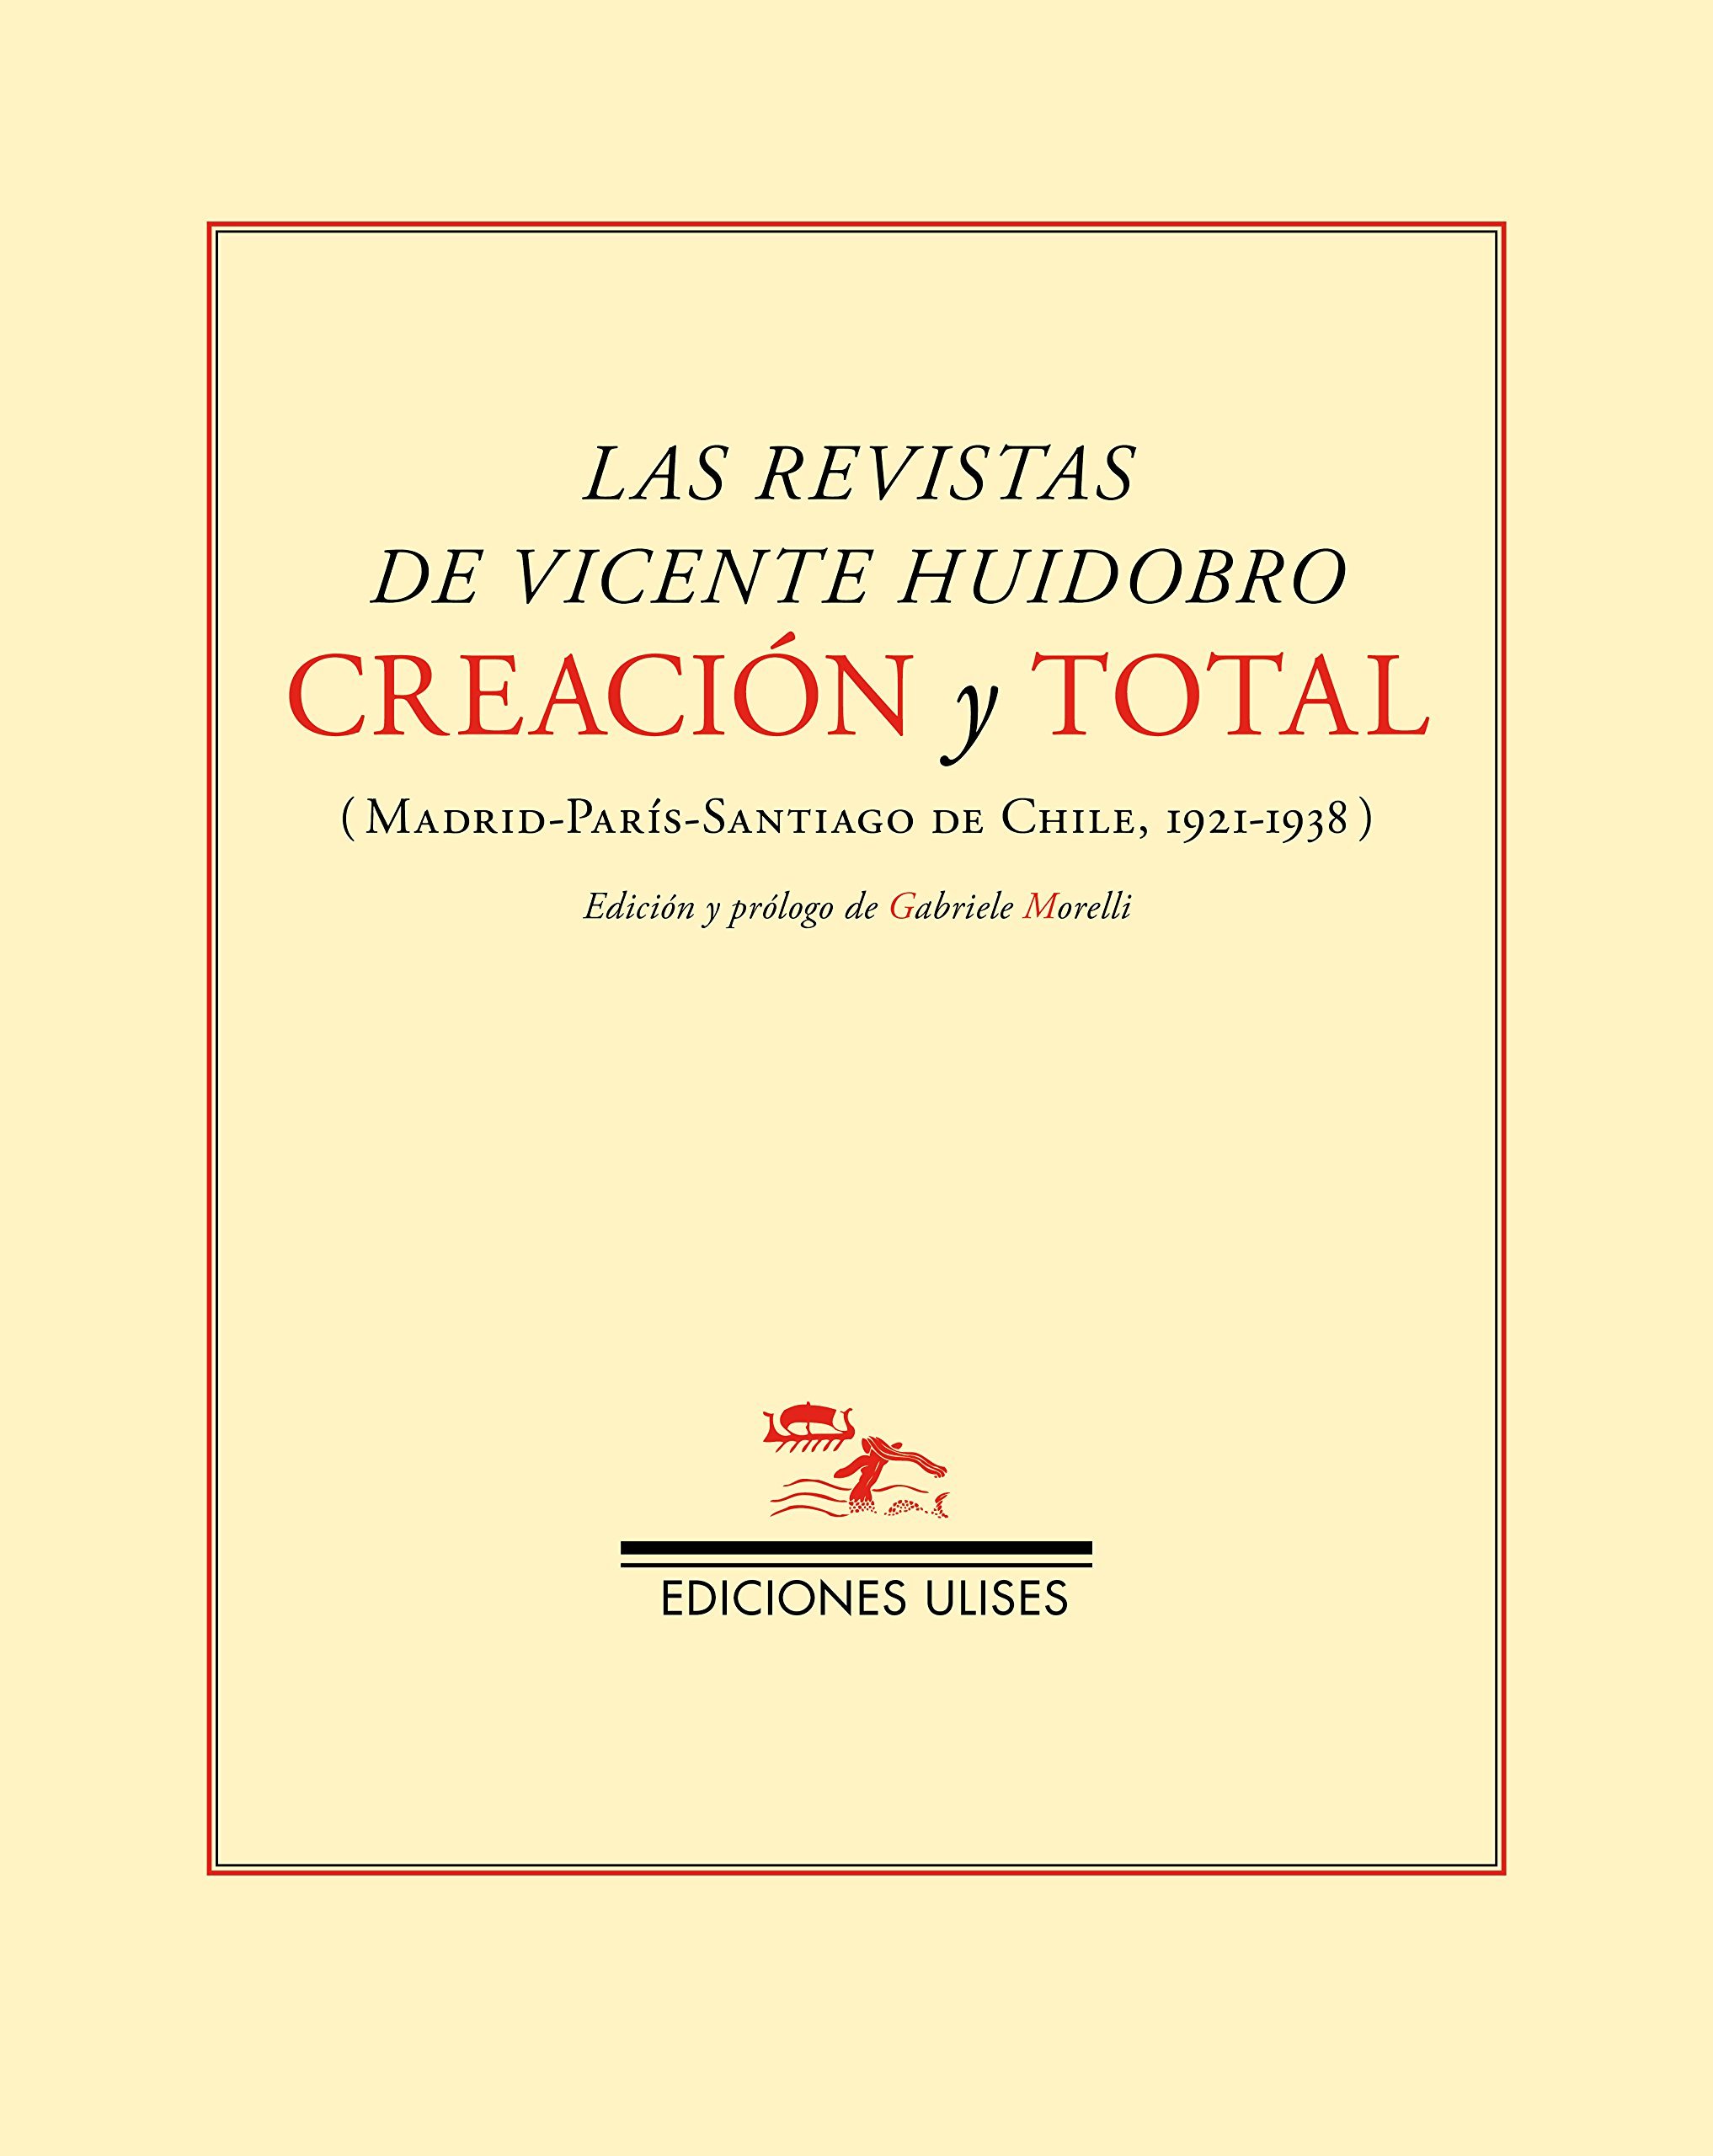 Creación y total, las revistas de Vicente Huidobro